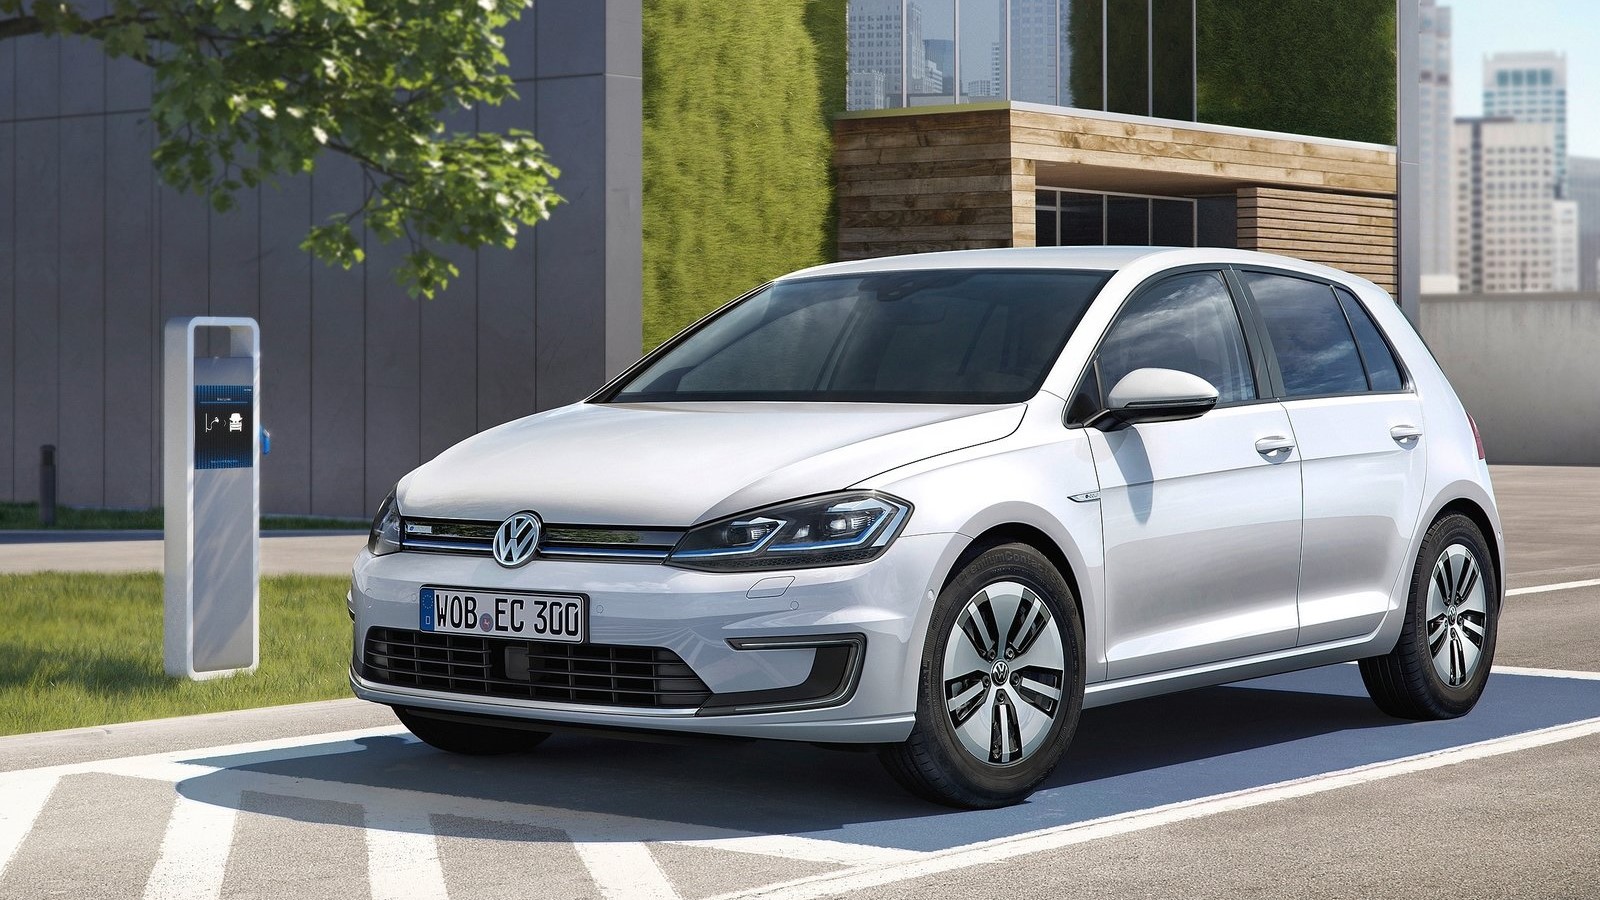 Το «παρών» στο εκθεσιακό συνέδριο ΗΛΕΚΤΡΟΚΙΝΗΣΗ expo, θα δώσει και το αμιγώς ηλεκτρικό Volkswagen e-Golf.